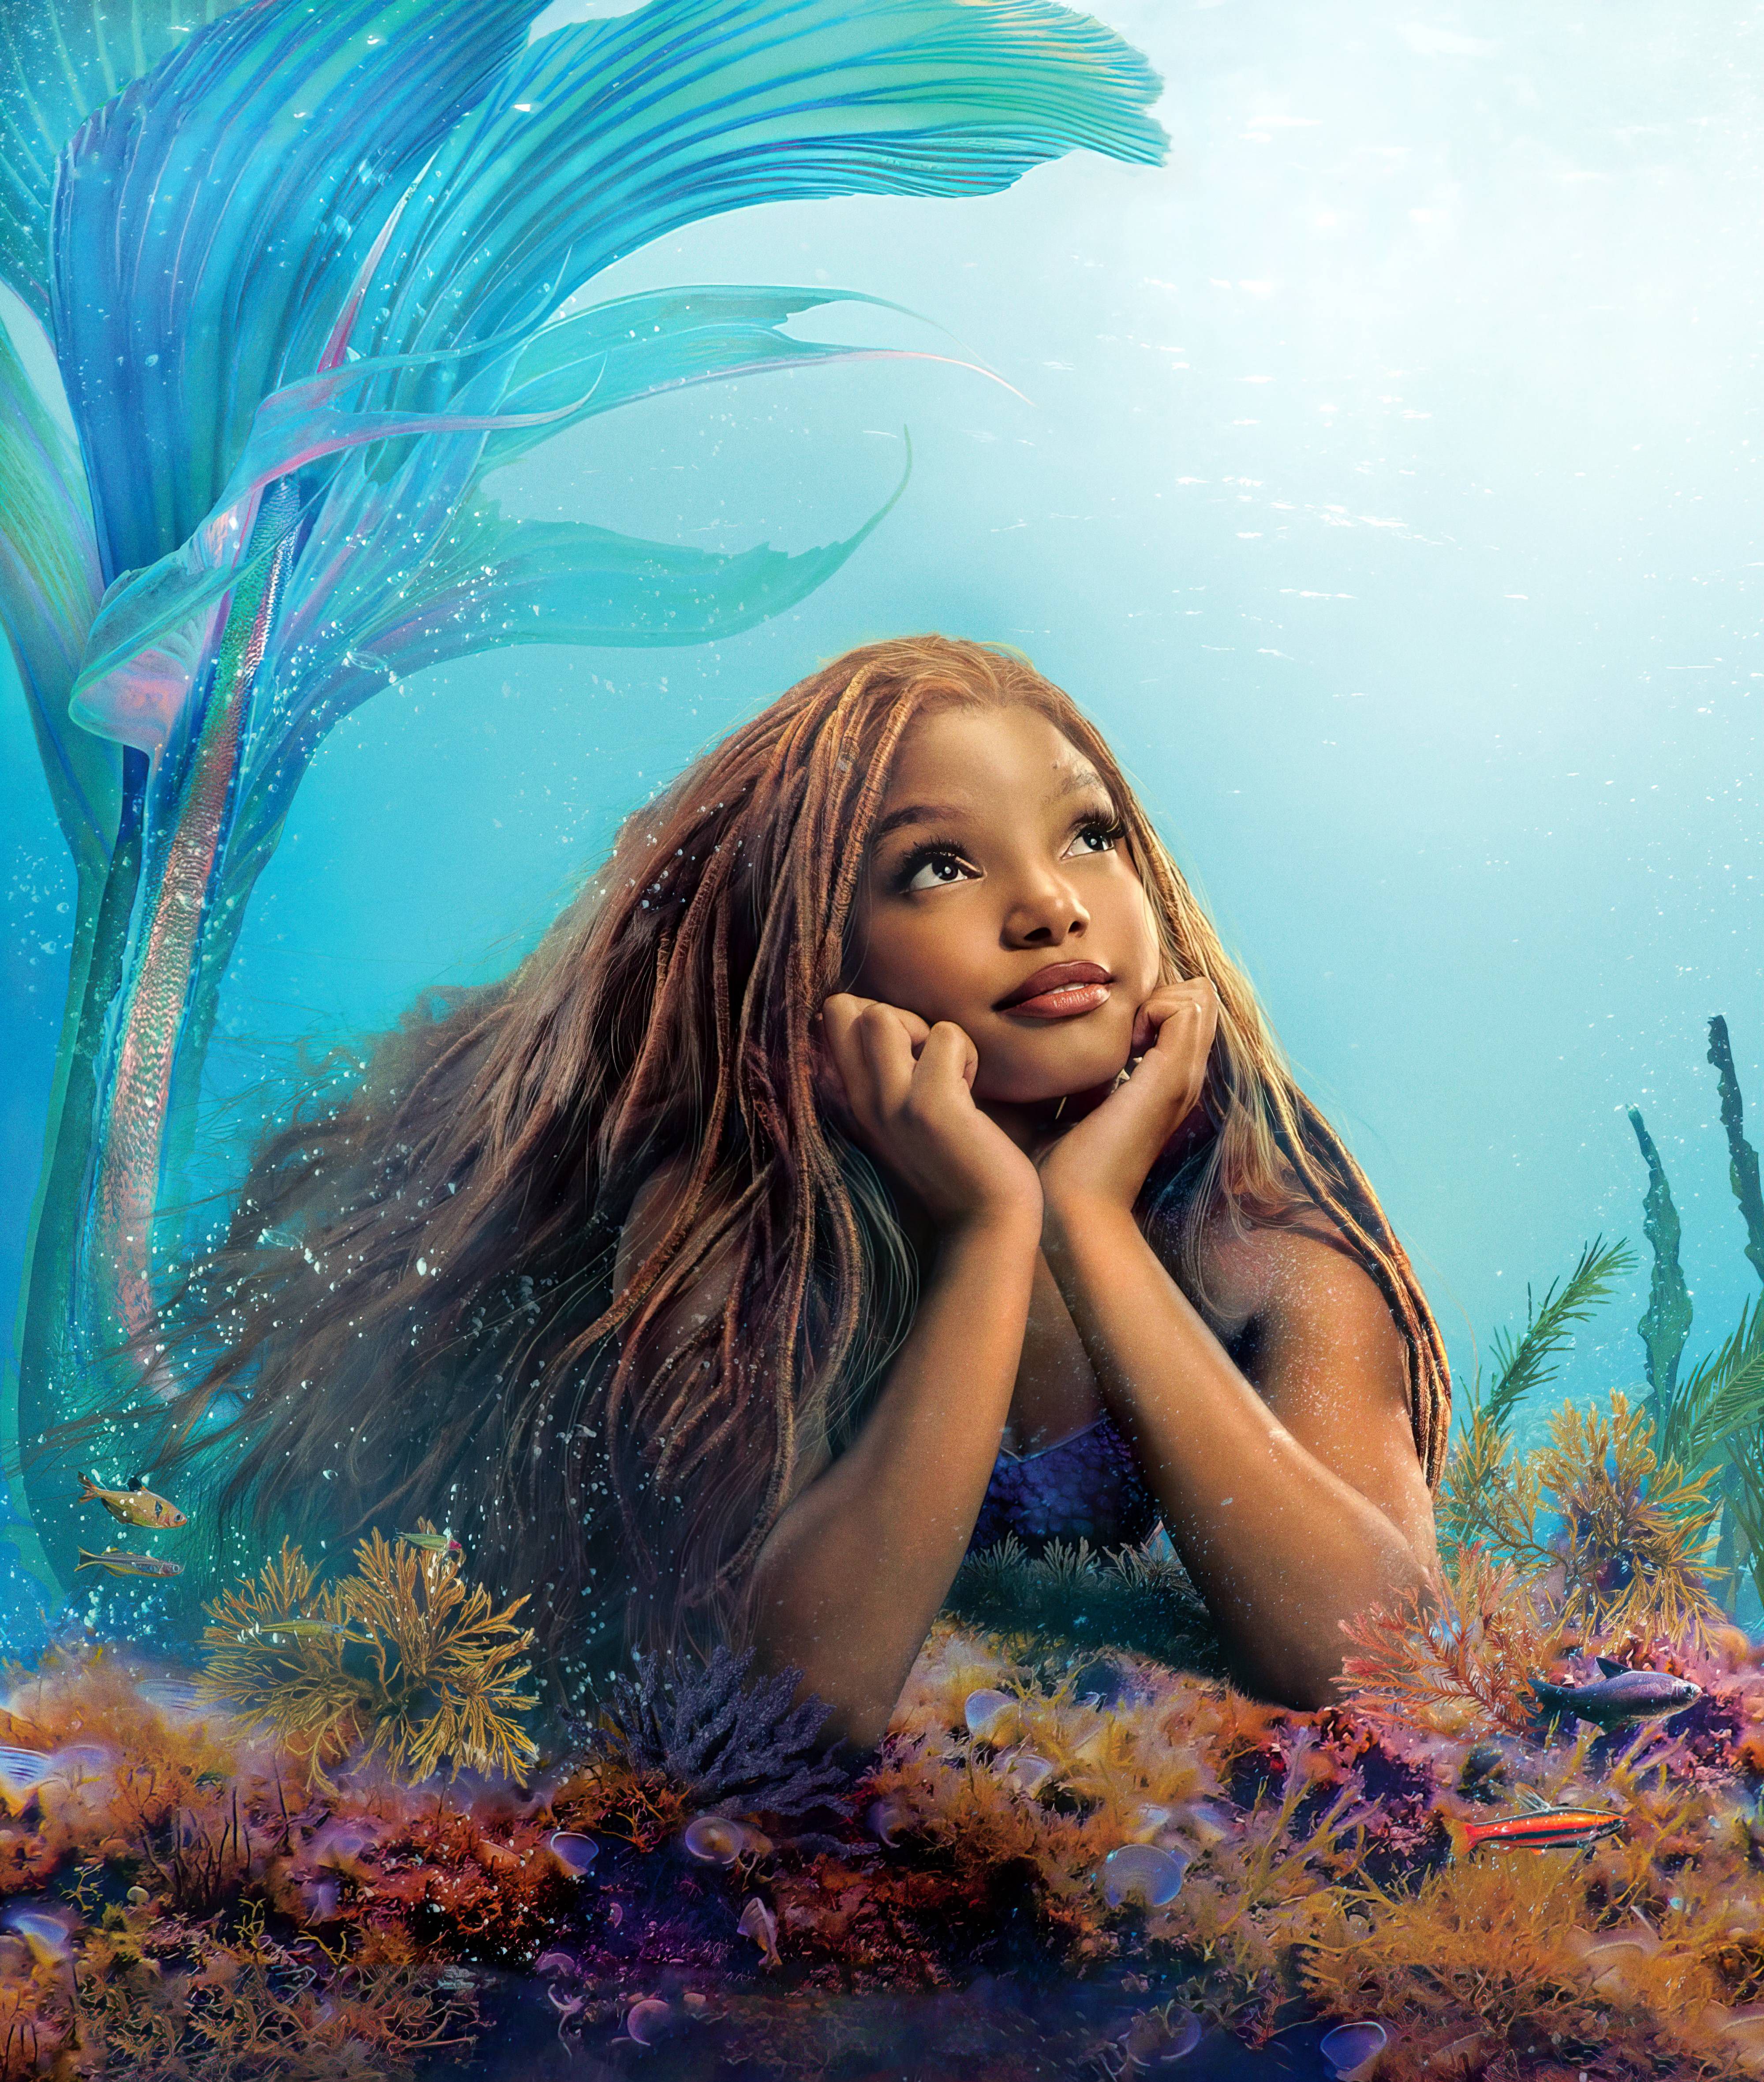 Halle Bailey as Ariel Wallpaper 4K, The Little Mermaid